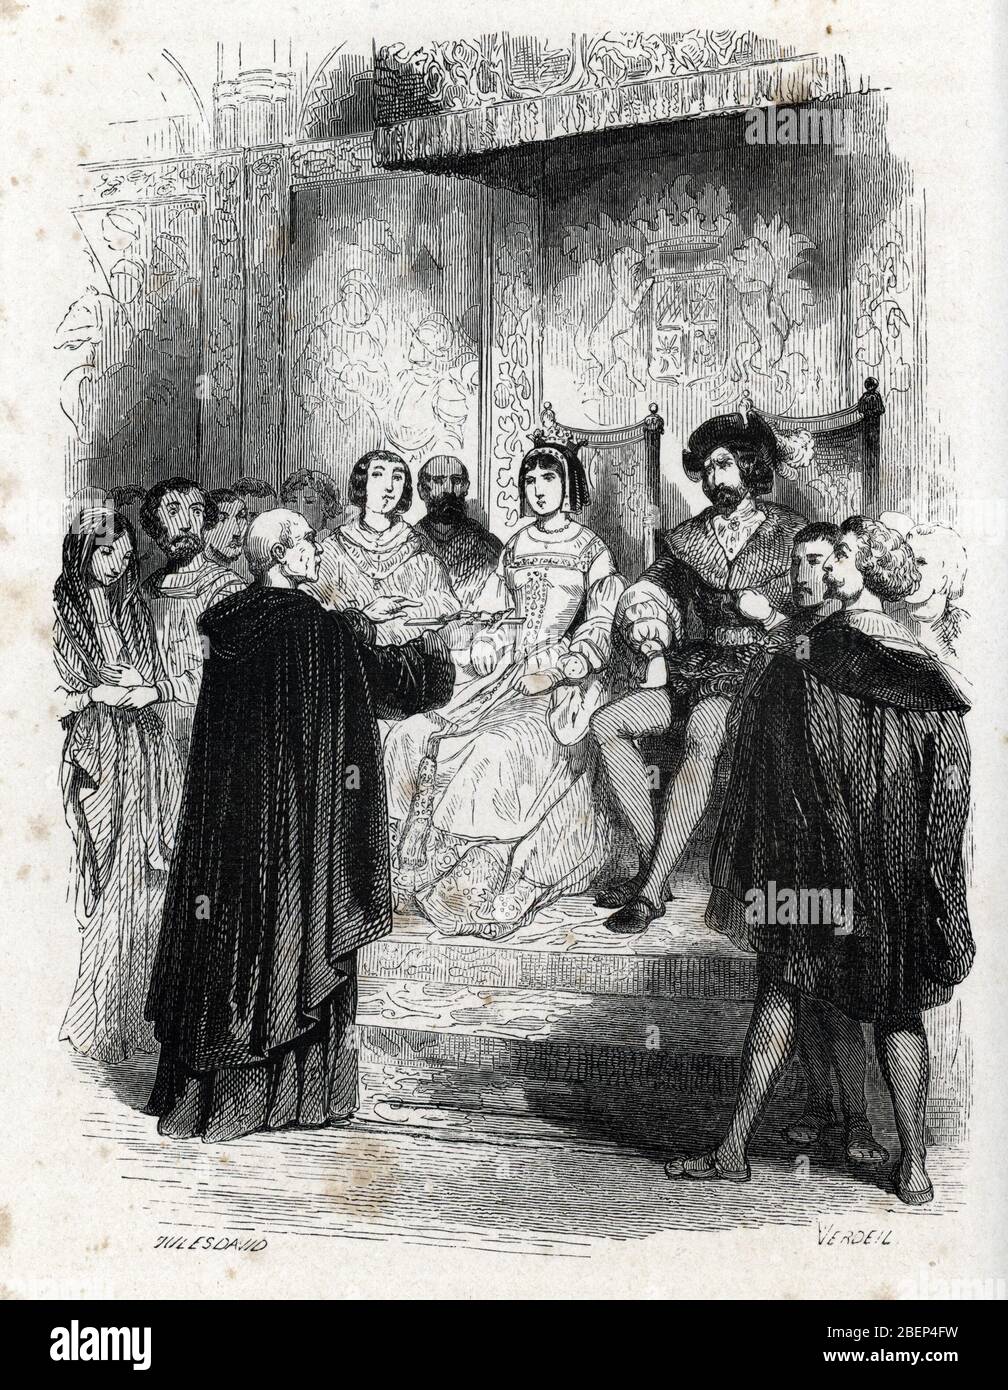 Inquisiton espagnole : Portrait de Tomas de Torquemada (1420-1498) tenant un crocifix face aux roi d'Espagne Isabelle de Castille et du roi Ferdinand Foto Stock